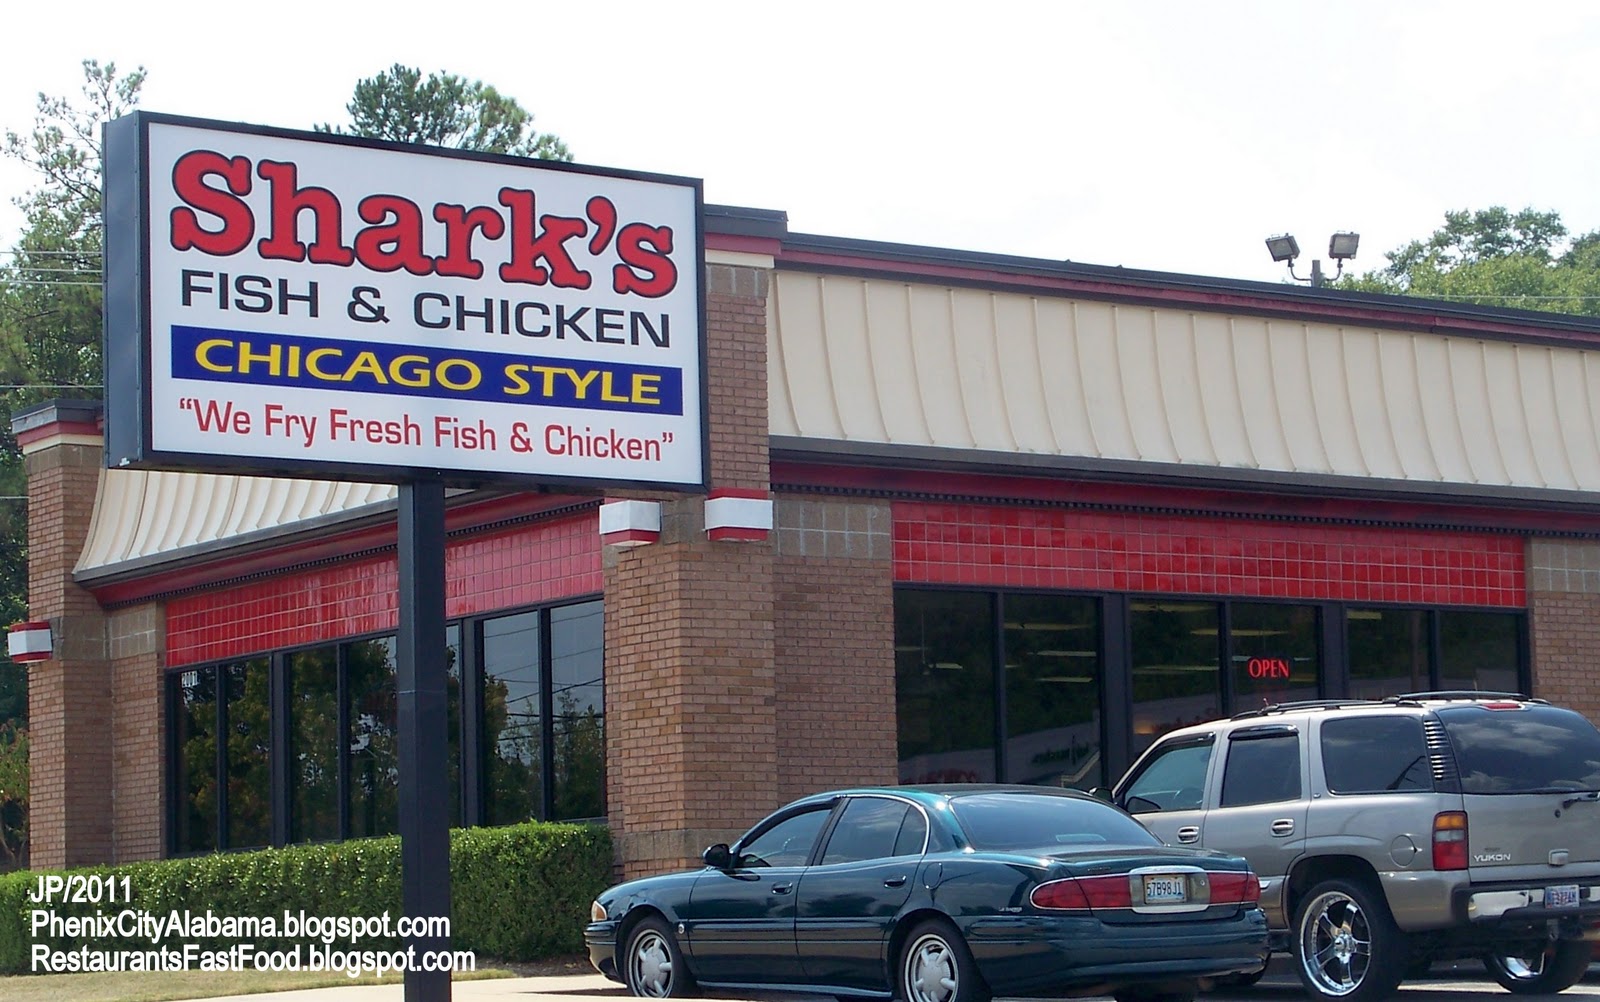 சுறாவின் புதிய ஸ்டையில் பிசினஸ்  SHARK%2527S+Phenix+City+Alabama%252C+Shark%2527s+Fried+Fish+%2526+Chicken+Chicago+Style+Fast+Food+Restaurant